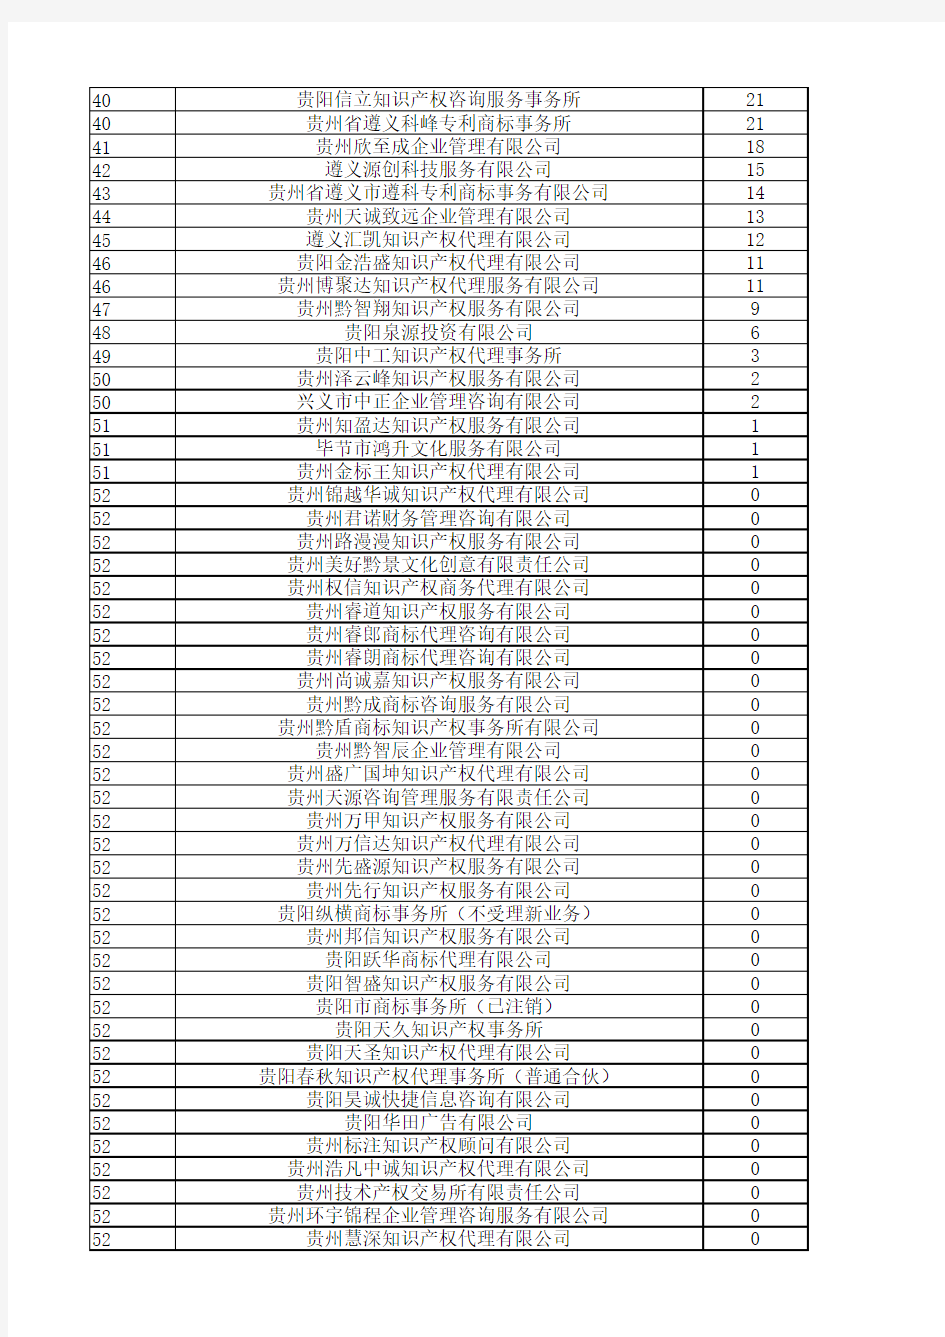 贵州省商标代理机构商标代理量排名表2015